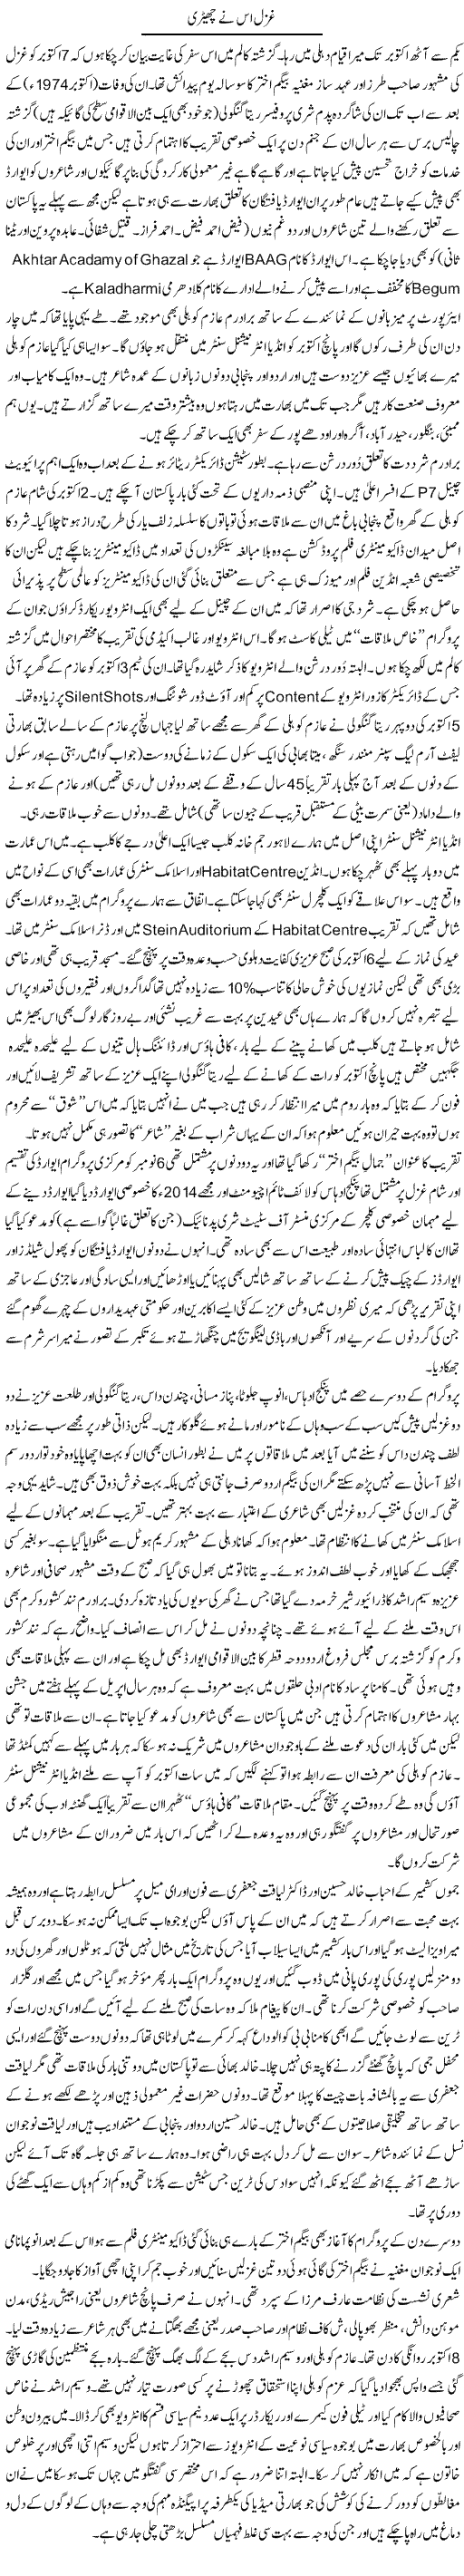 Ghazal Is Nay Chairi | Amjad Islam Amjad | Daily Urdu Columns